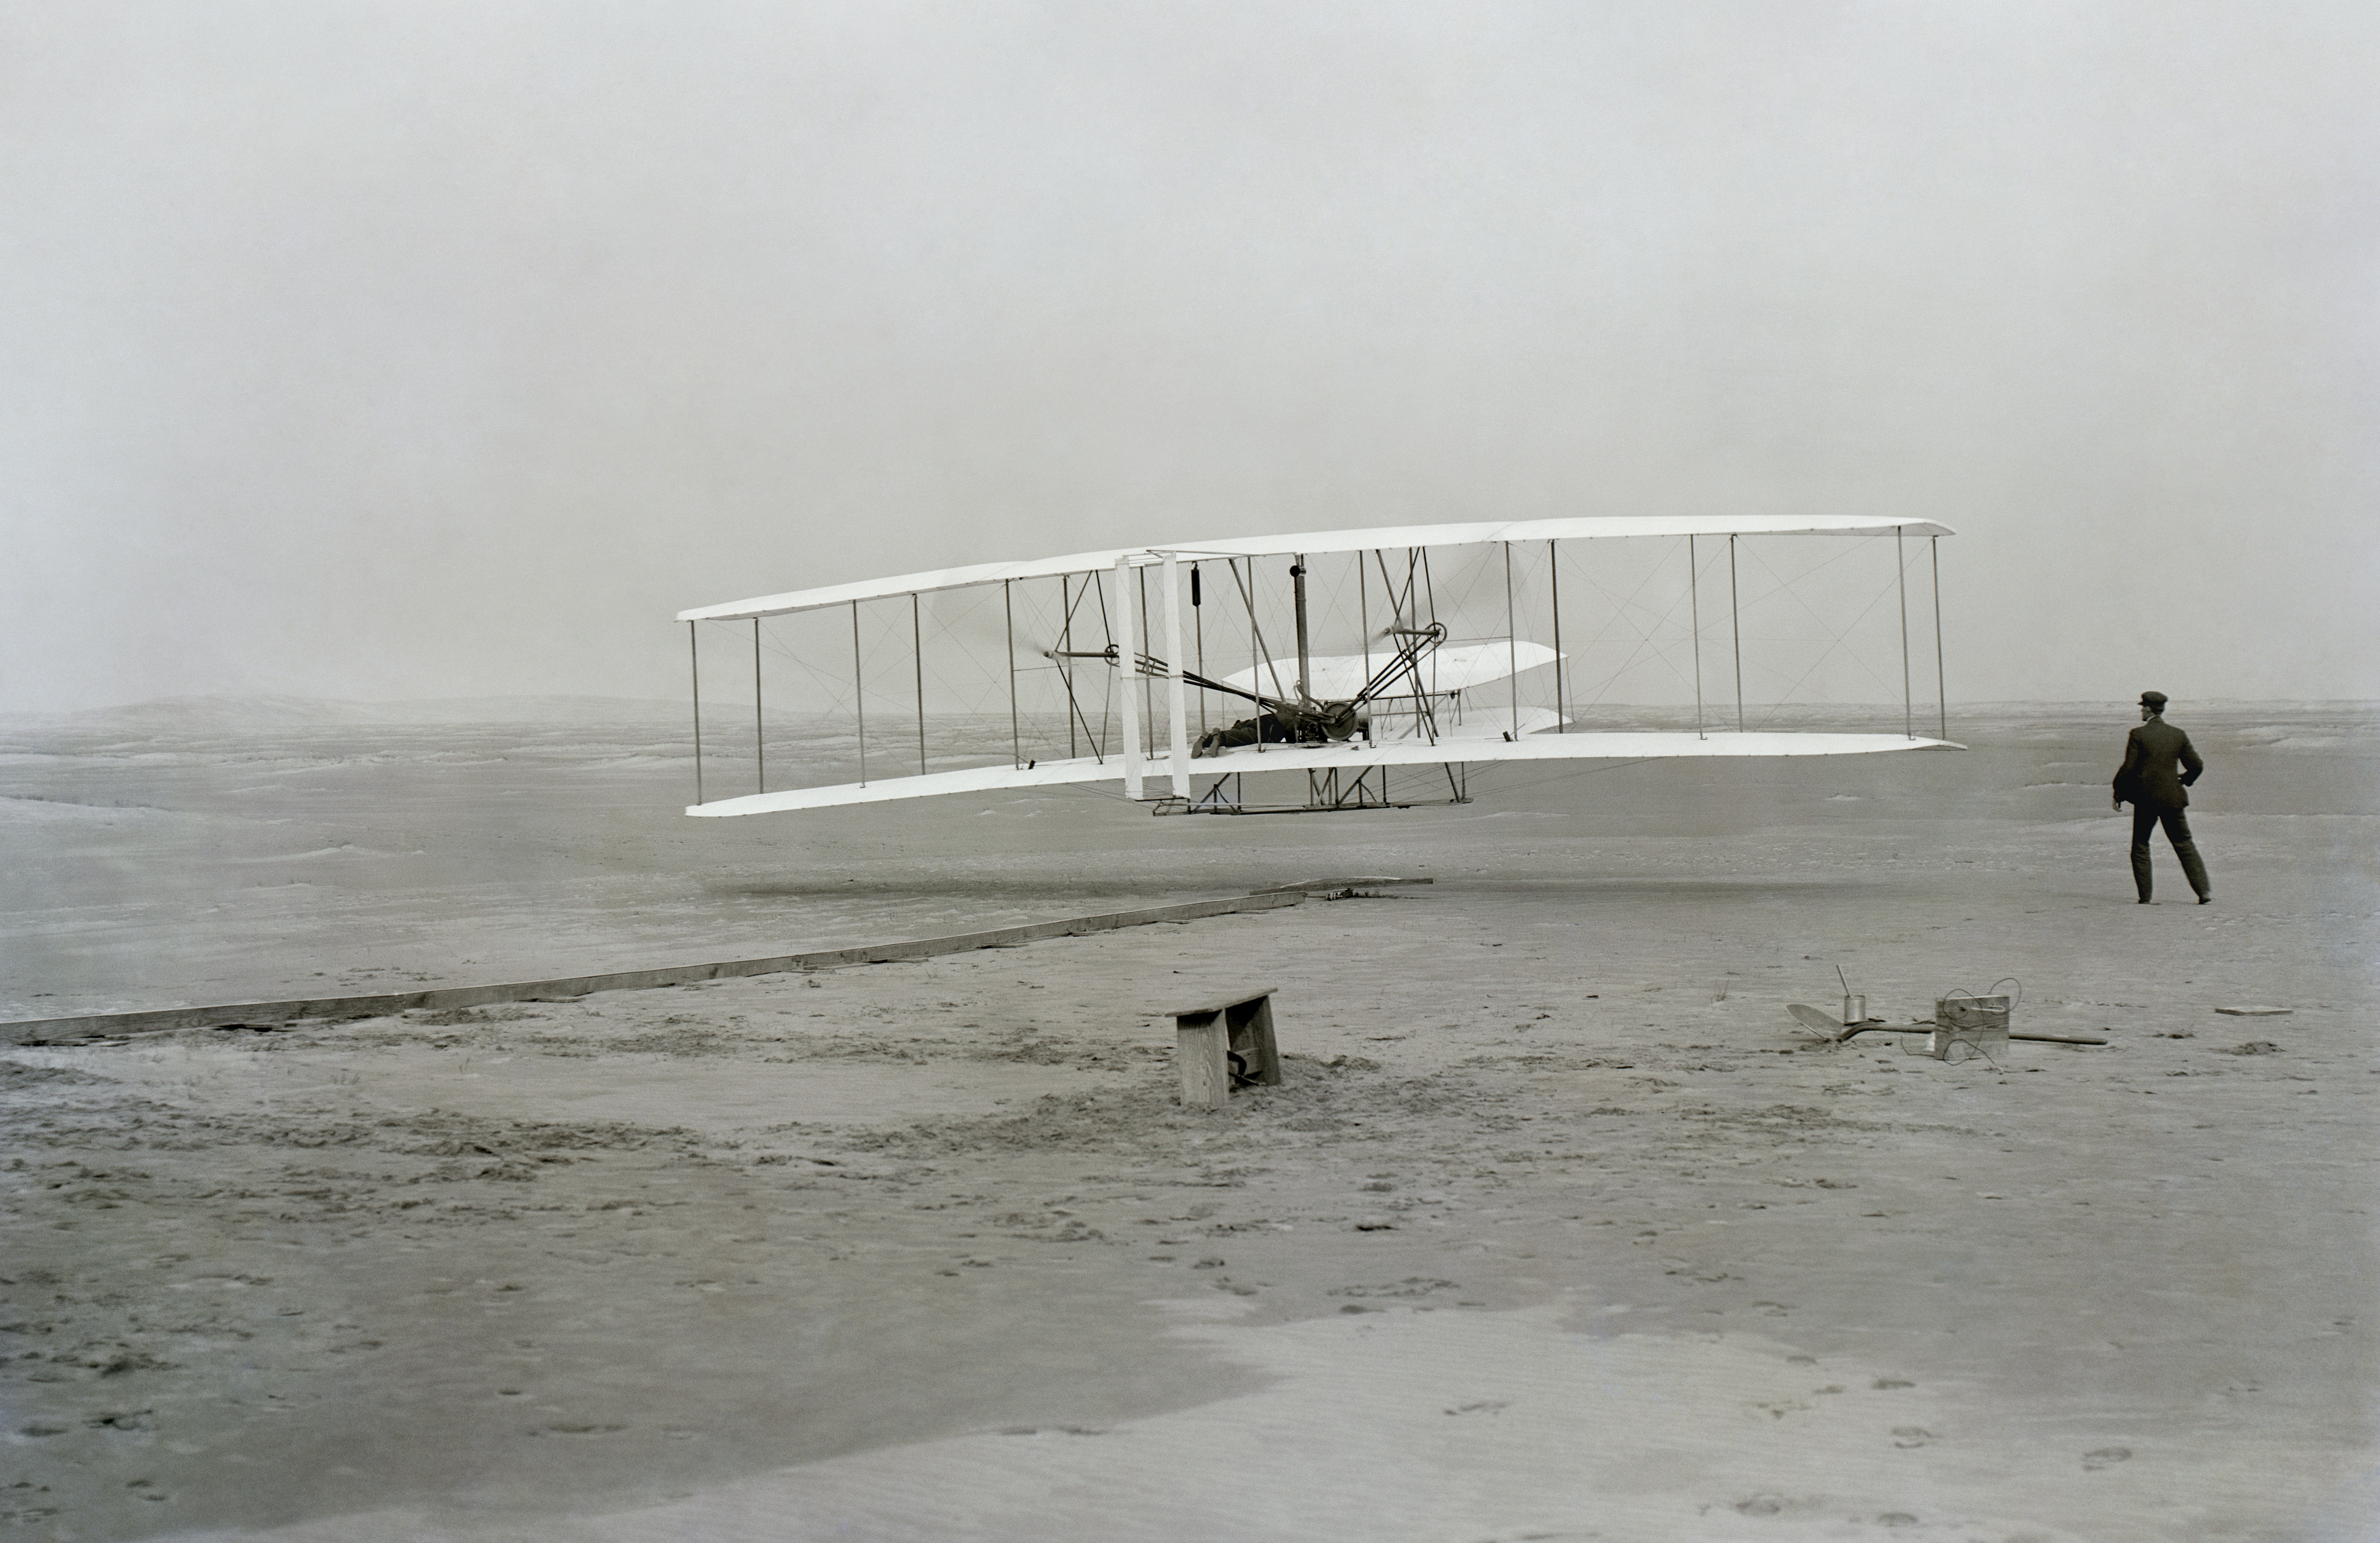 Le premier avion des frères Wright